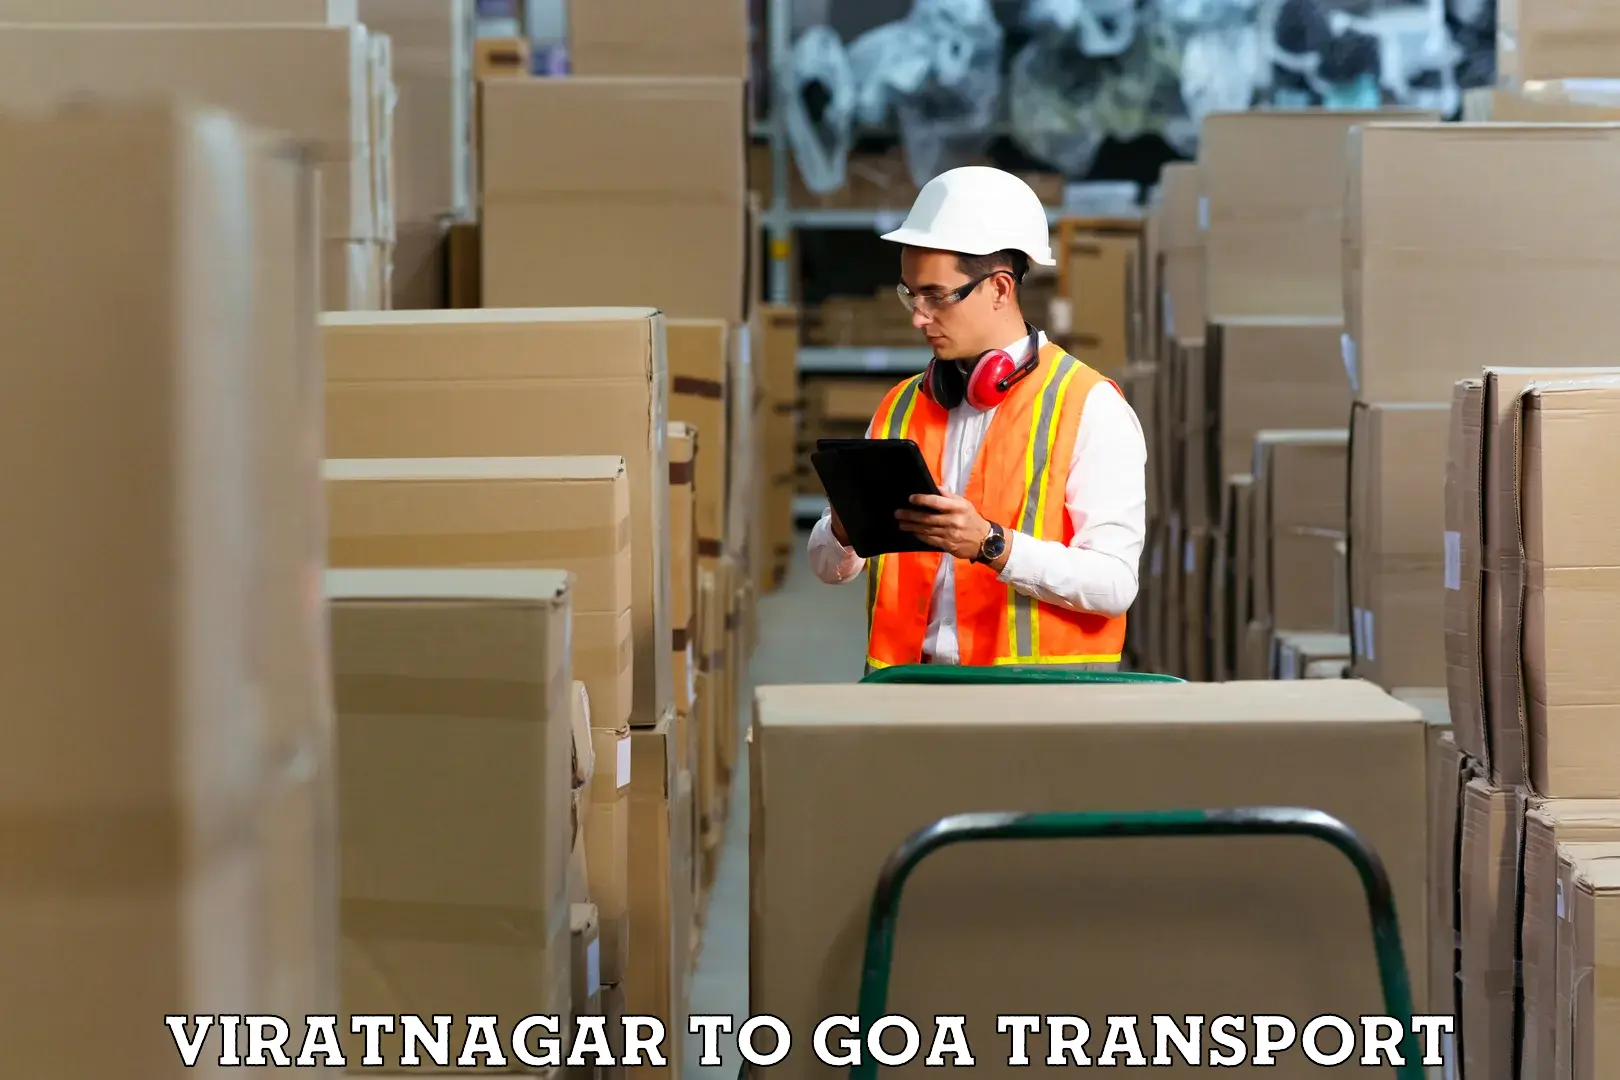 Goods delivery service Viratnagar to Mormugao Port